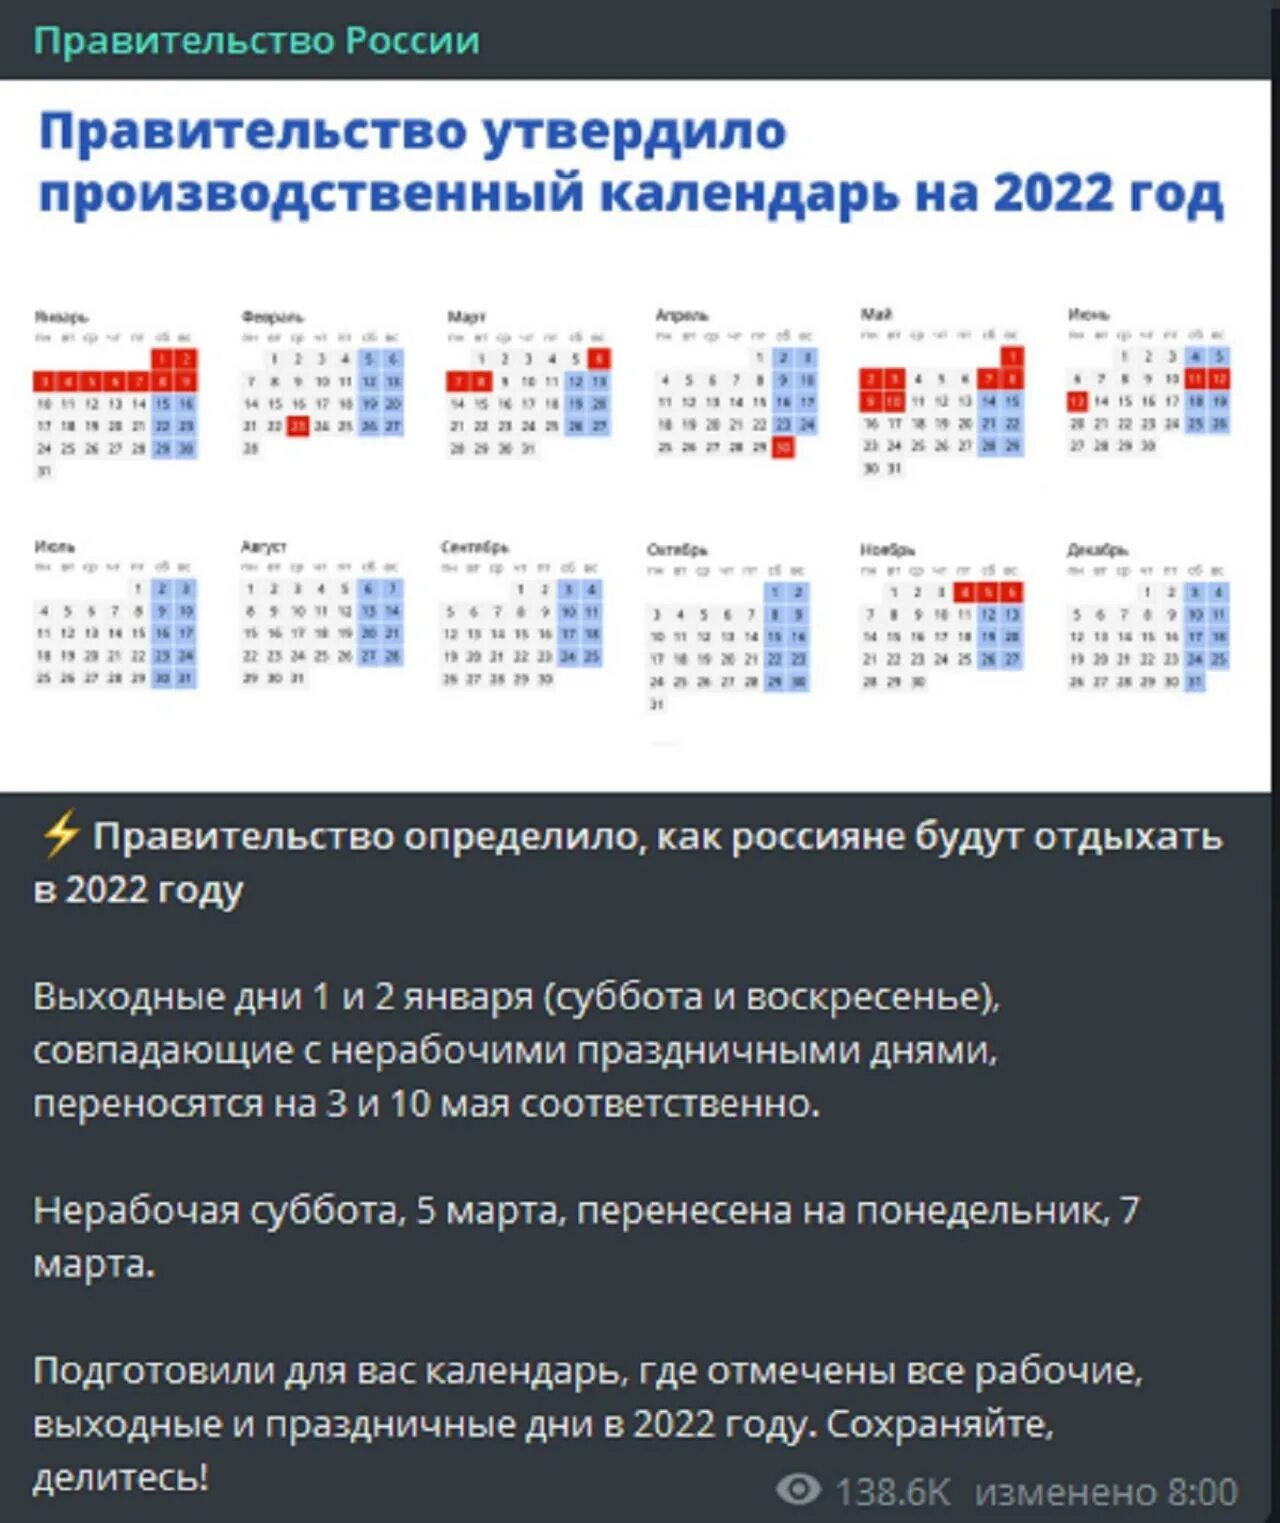 Праздники в России 2022 календарь выходные и праздничные дни. Праздники 2022 официальные выходные в России и праздничные. Выходные и праздничные дни в 2022 году в России. Праздничные дни на новый год в 2022 году.